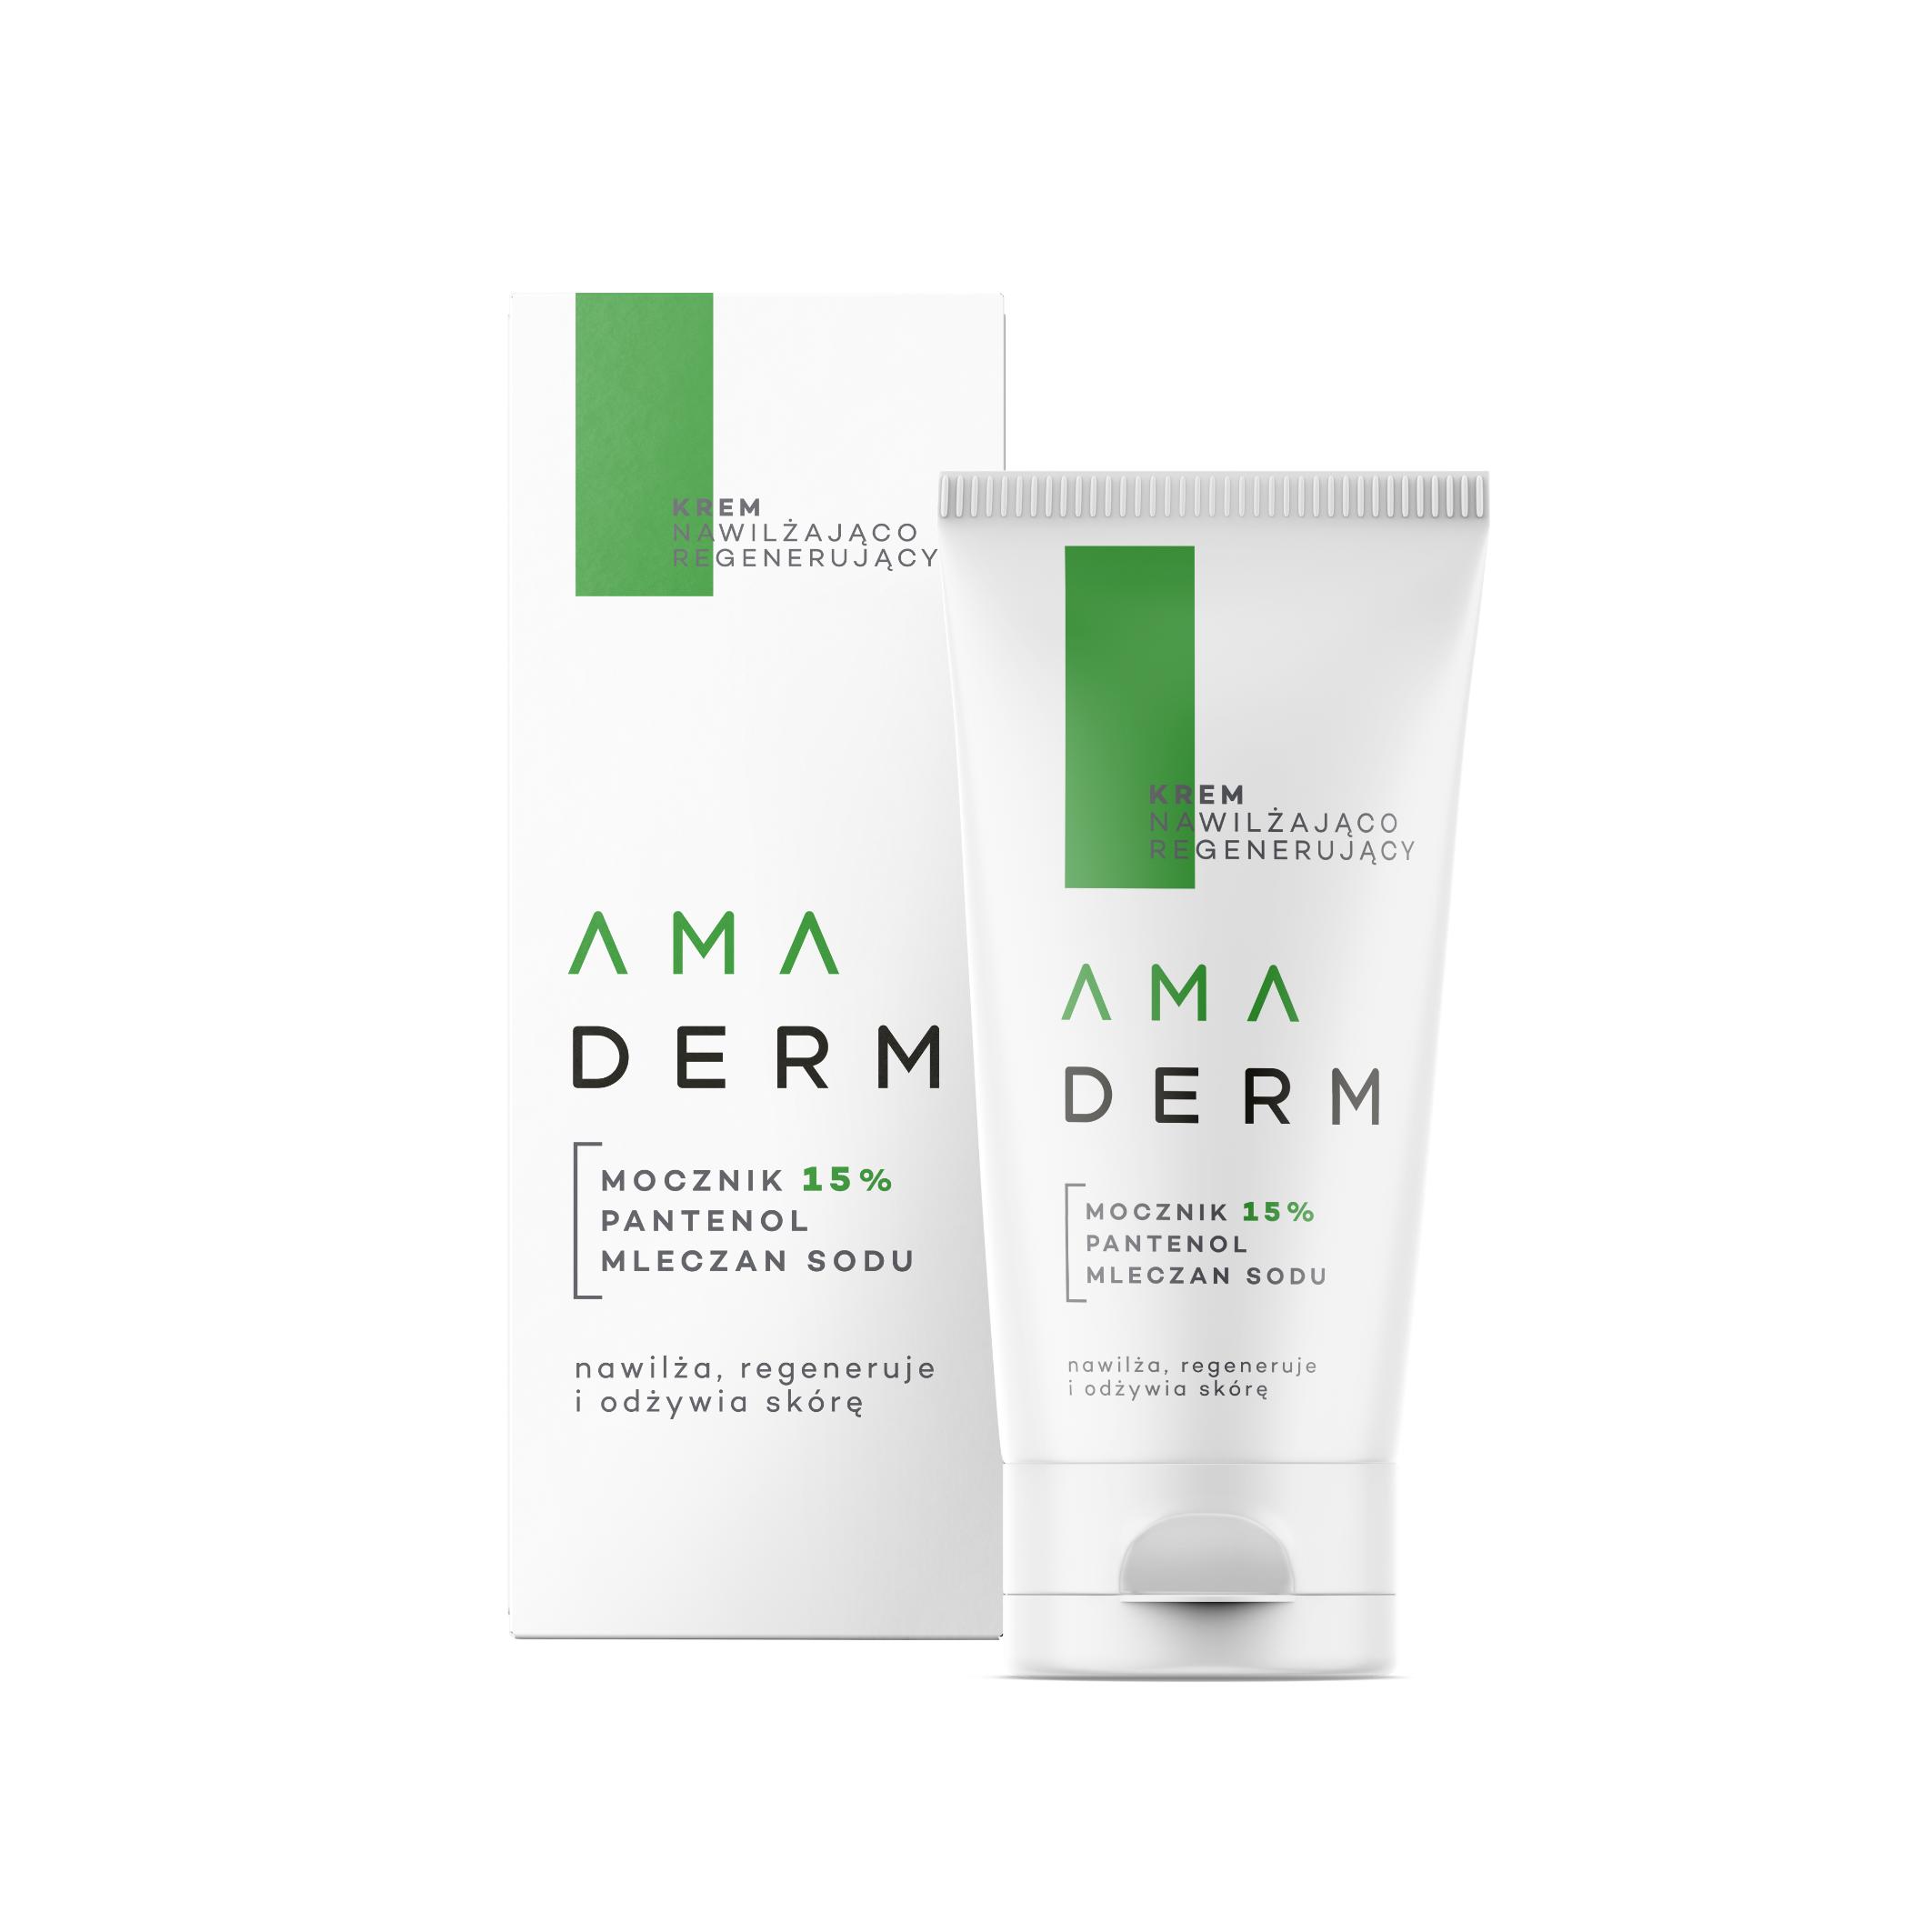 Amara - Amaderm krem nawilżająco-regenerujący urea 15% 50 ml